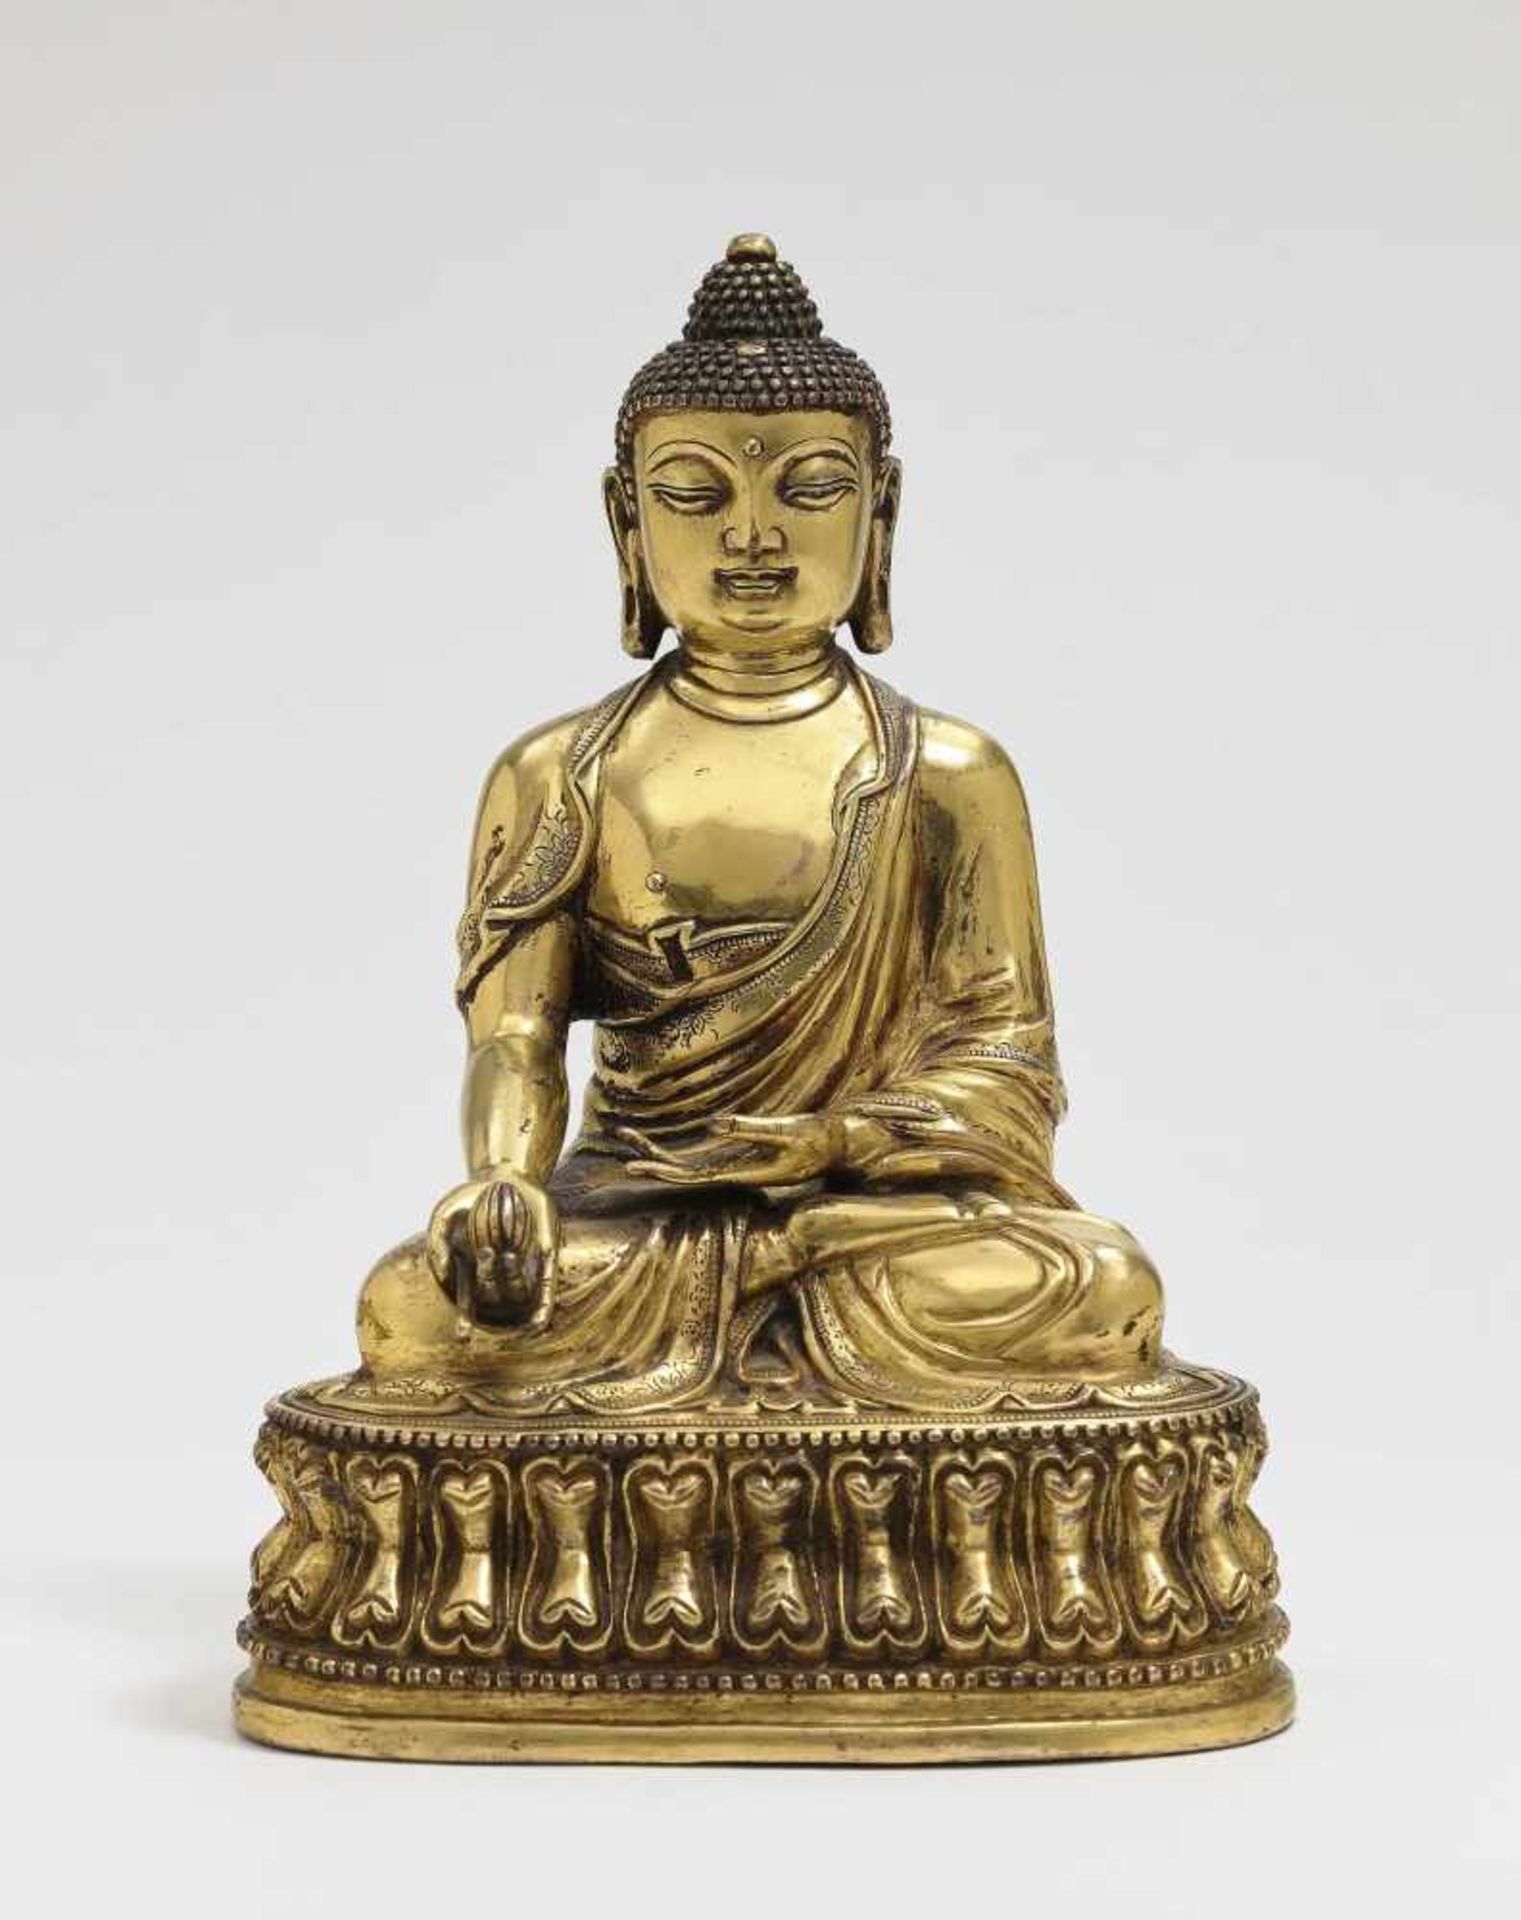 Buddha "Bhaisajyaguru" China, wohl 18. Jh. Bronze, vergoldet. In Meditationssitz auf Lotosthron.